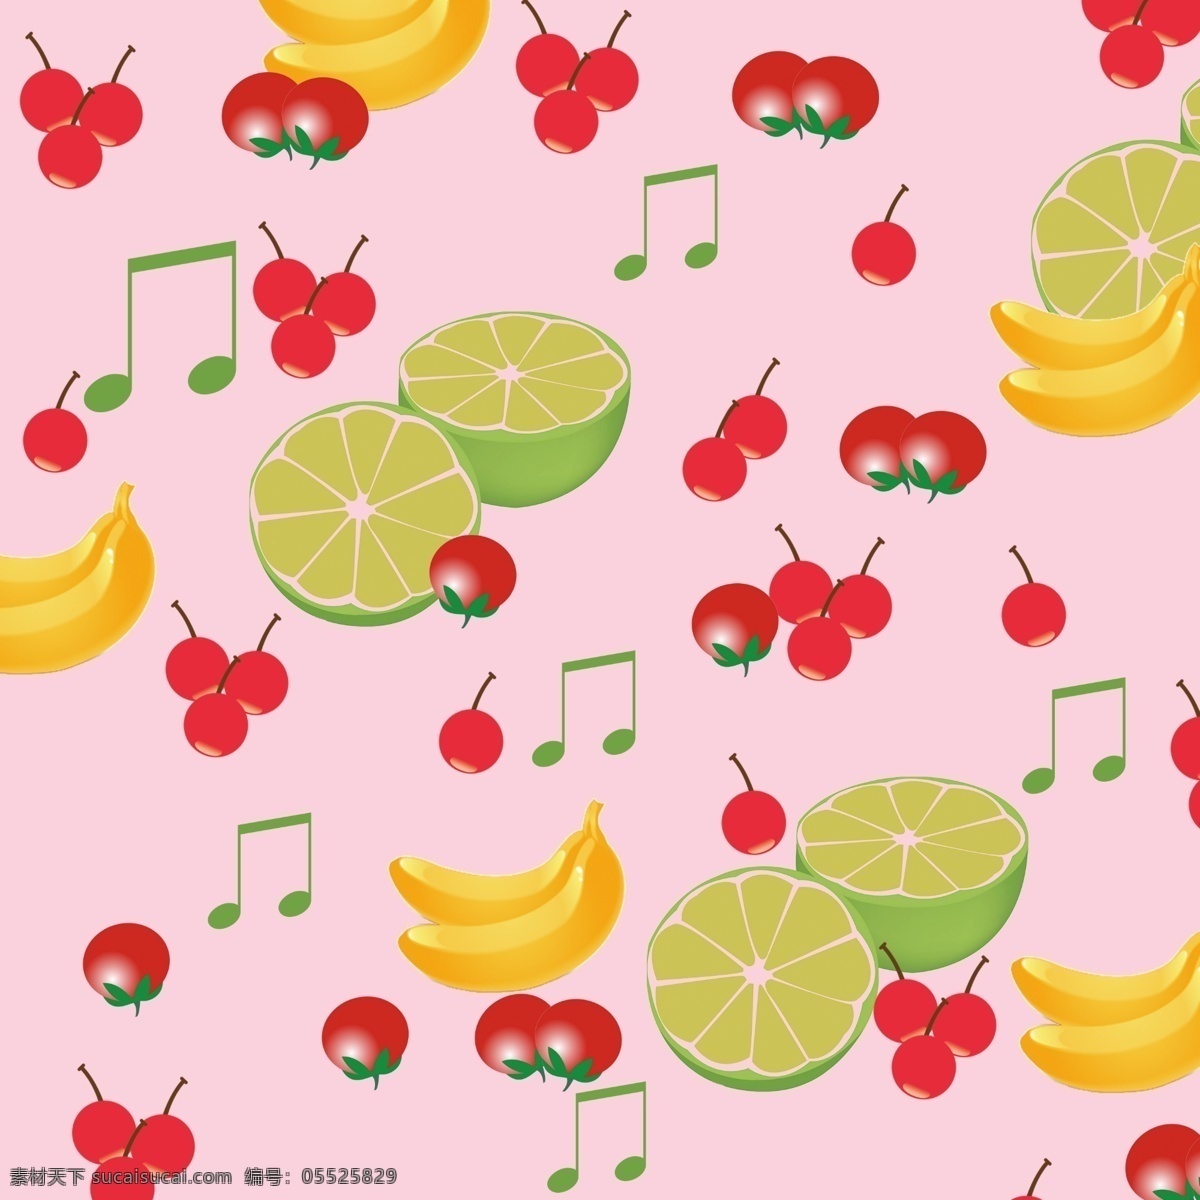 水果拼图 水果 各种水果 樱桃 香蕉 绿橙 西红柿